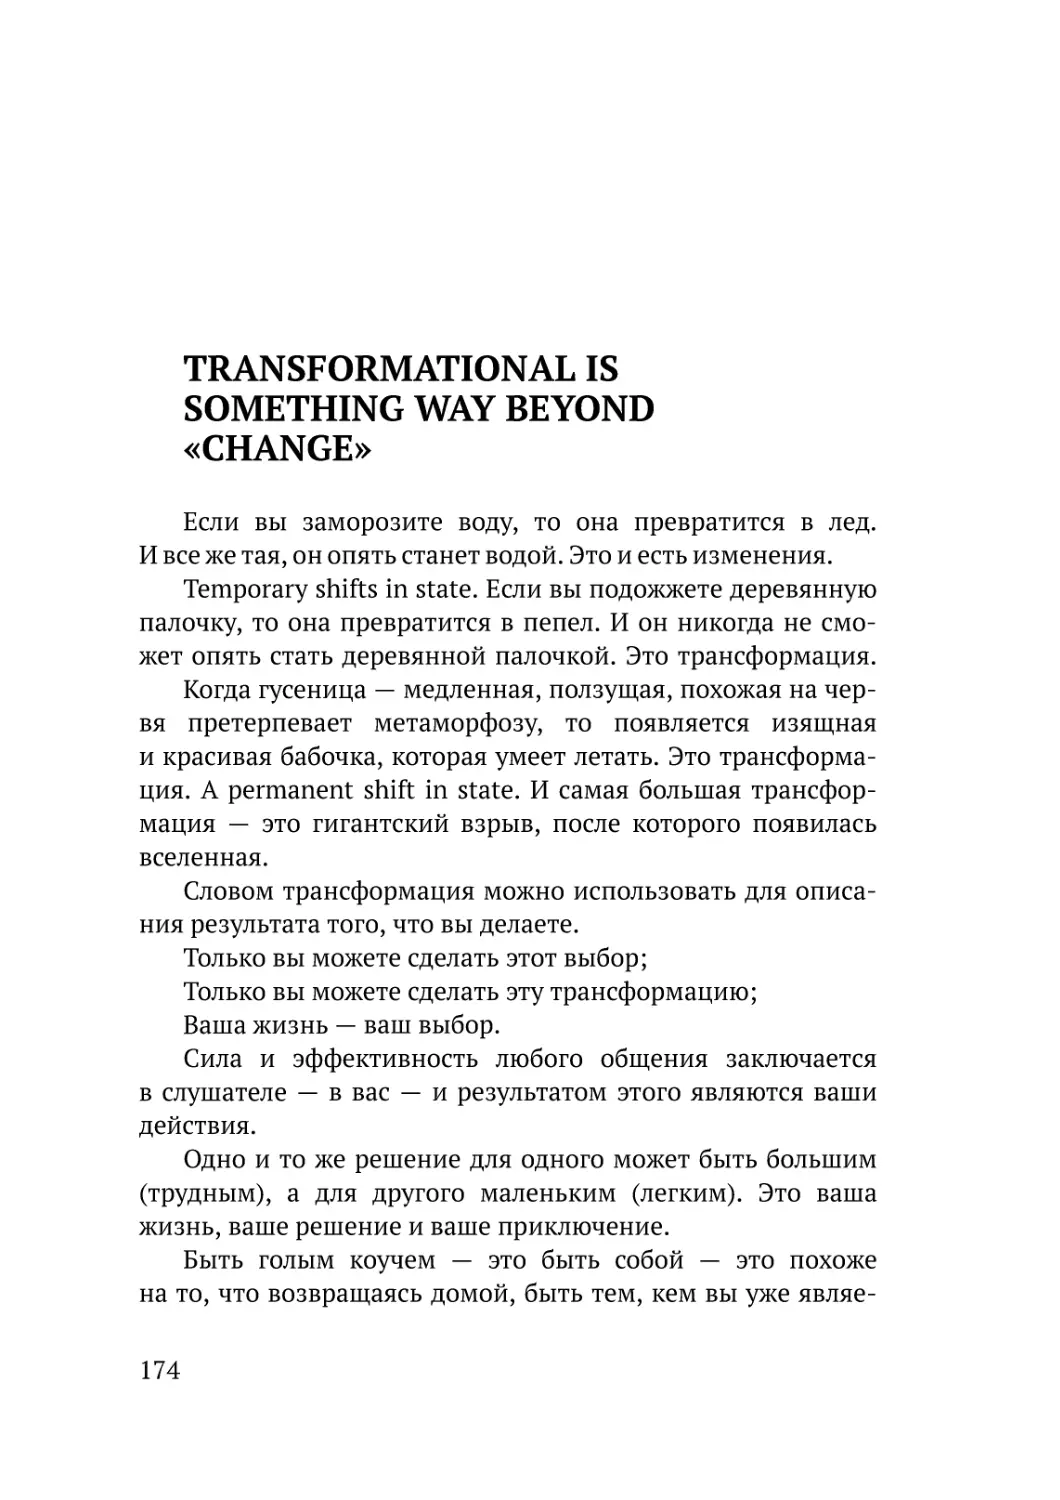 Transformational is something way beyond «change»